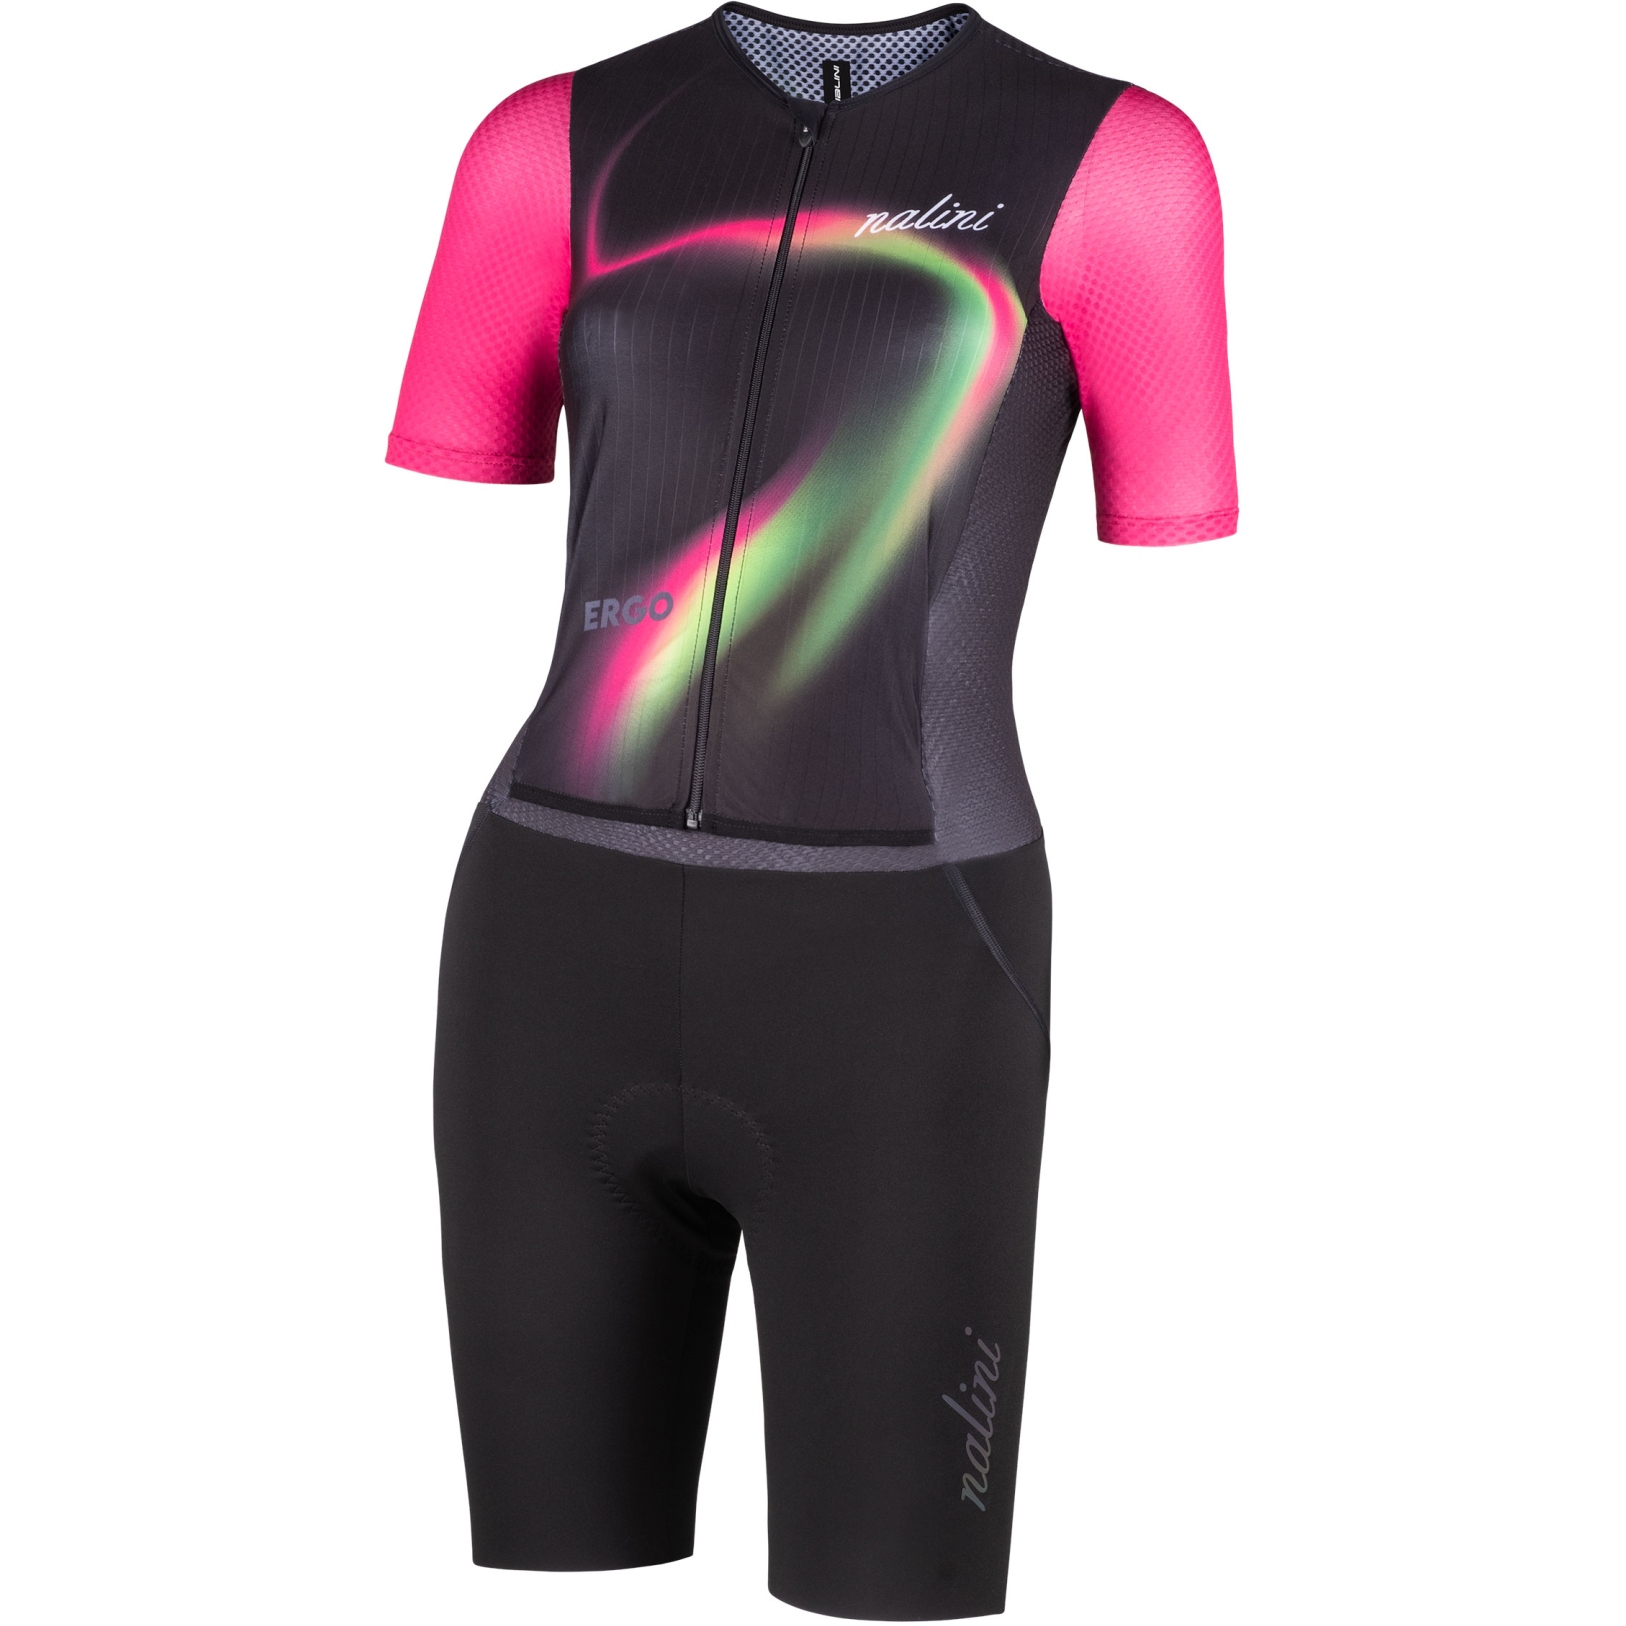 Produktbild von Nalini Fast Cycling Racesuit Damen - schwarz 4000